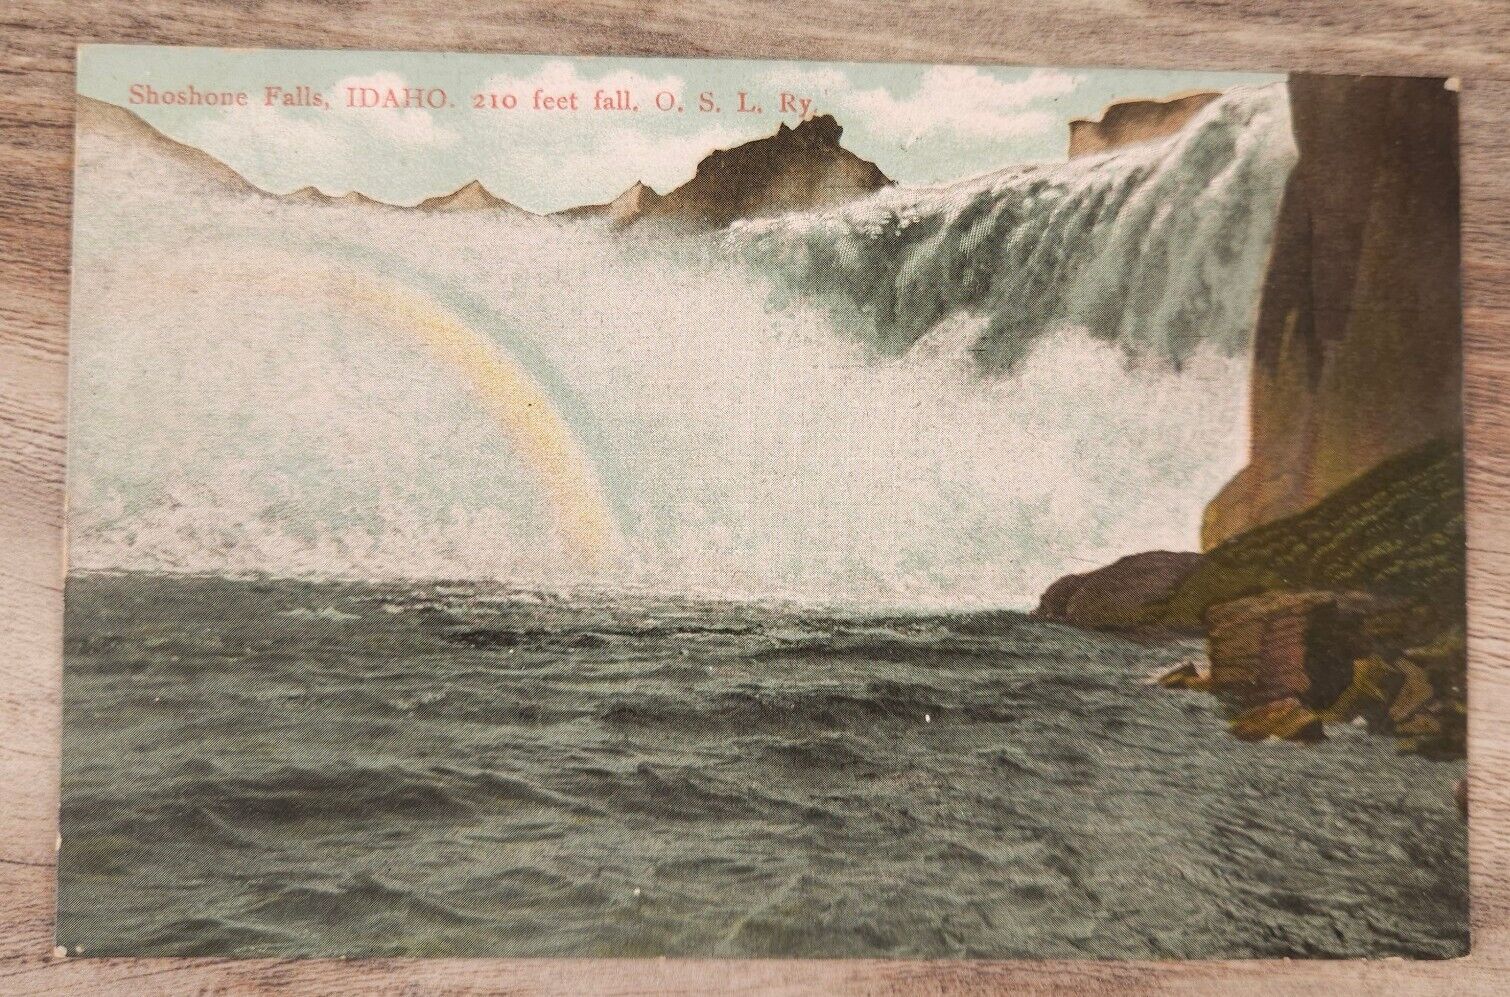 Shoshone Falls Idaho 210 Feet fall Rainbow OSL Ry UDB  Postcard